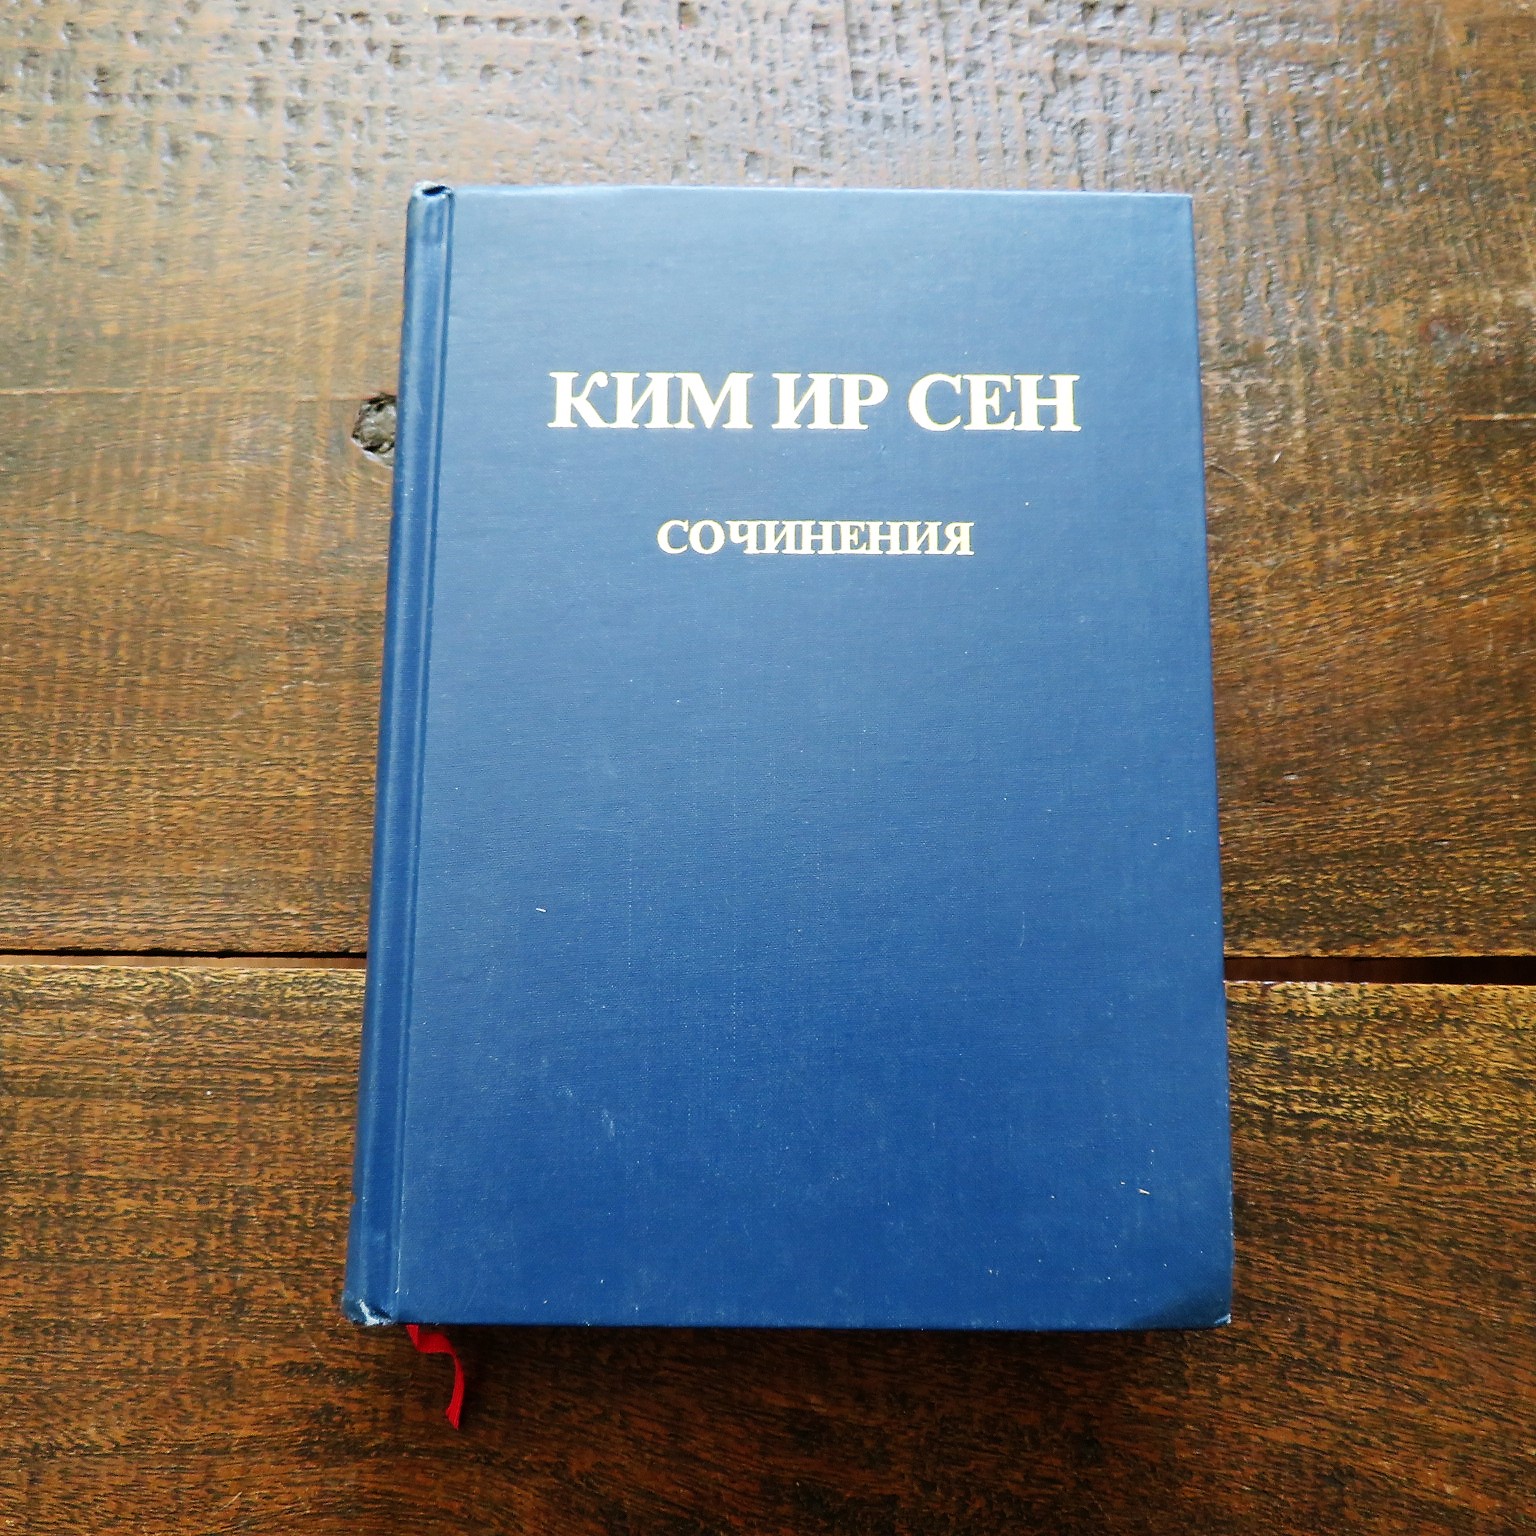 north-korea-book-kim-il-sung-russian-language-1